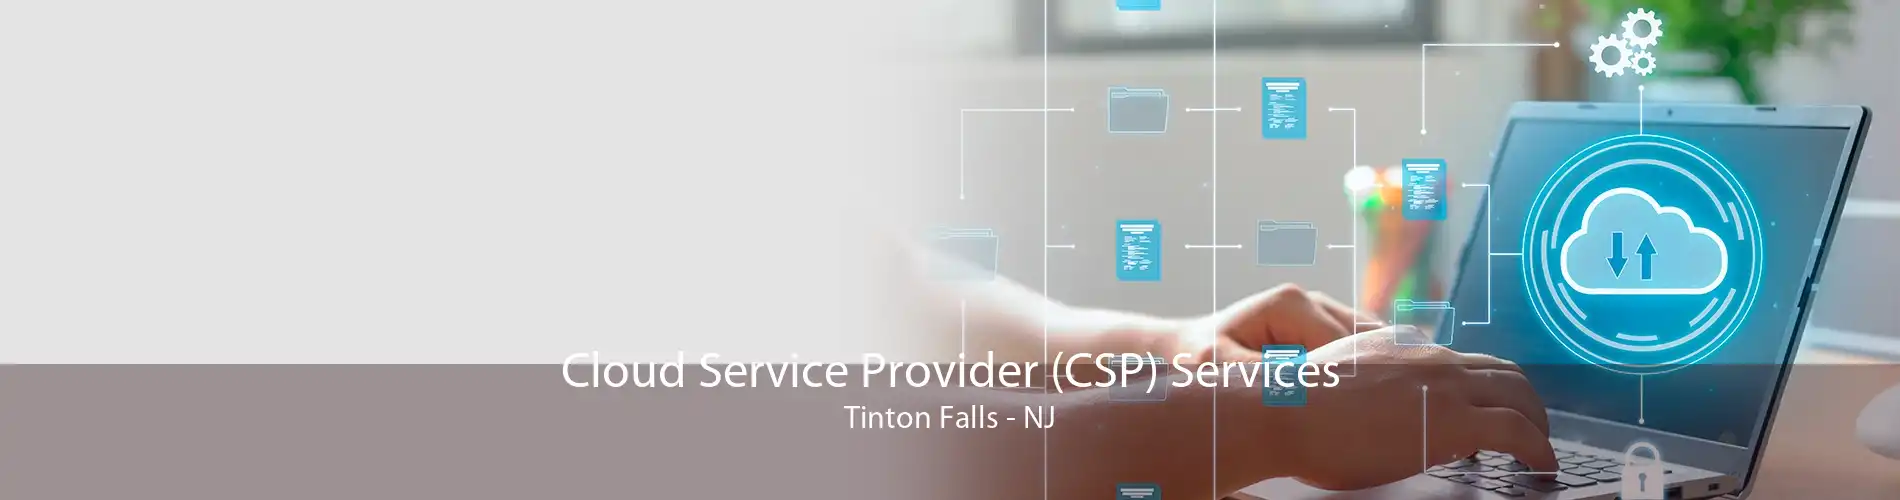 Cloud Service Provider (CSP) Services Tinton Falls - NJ